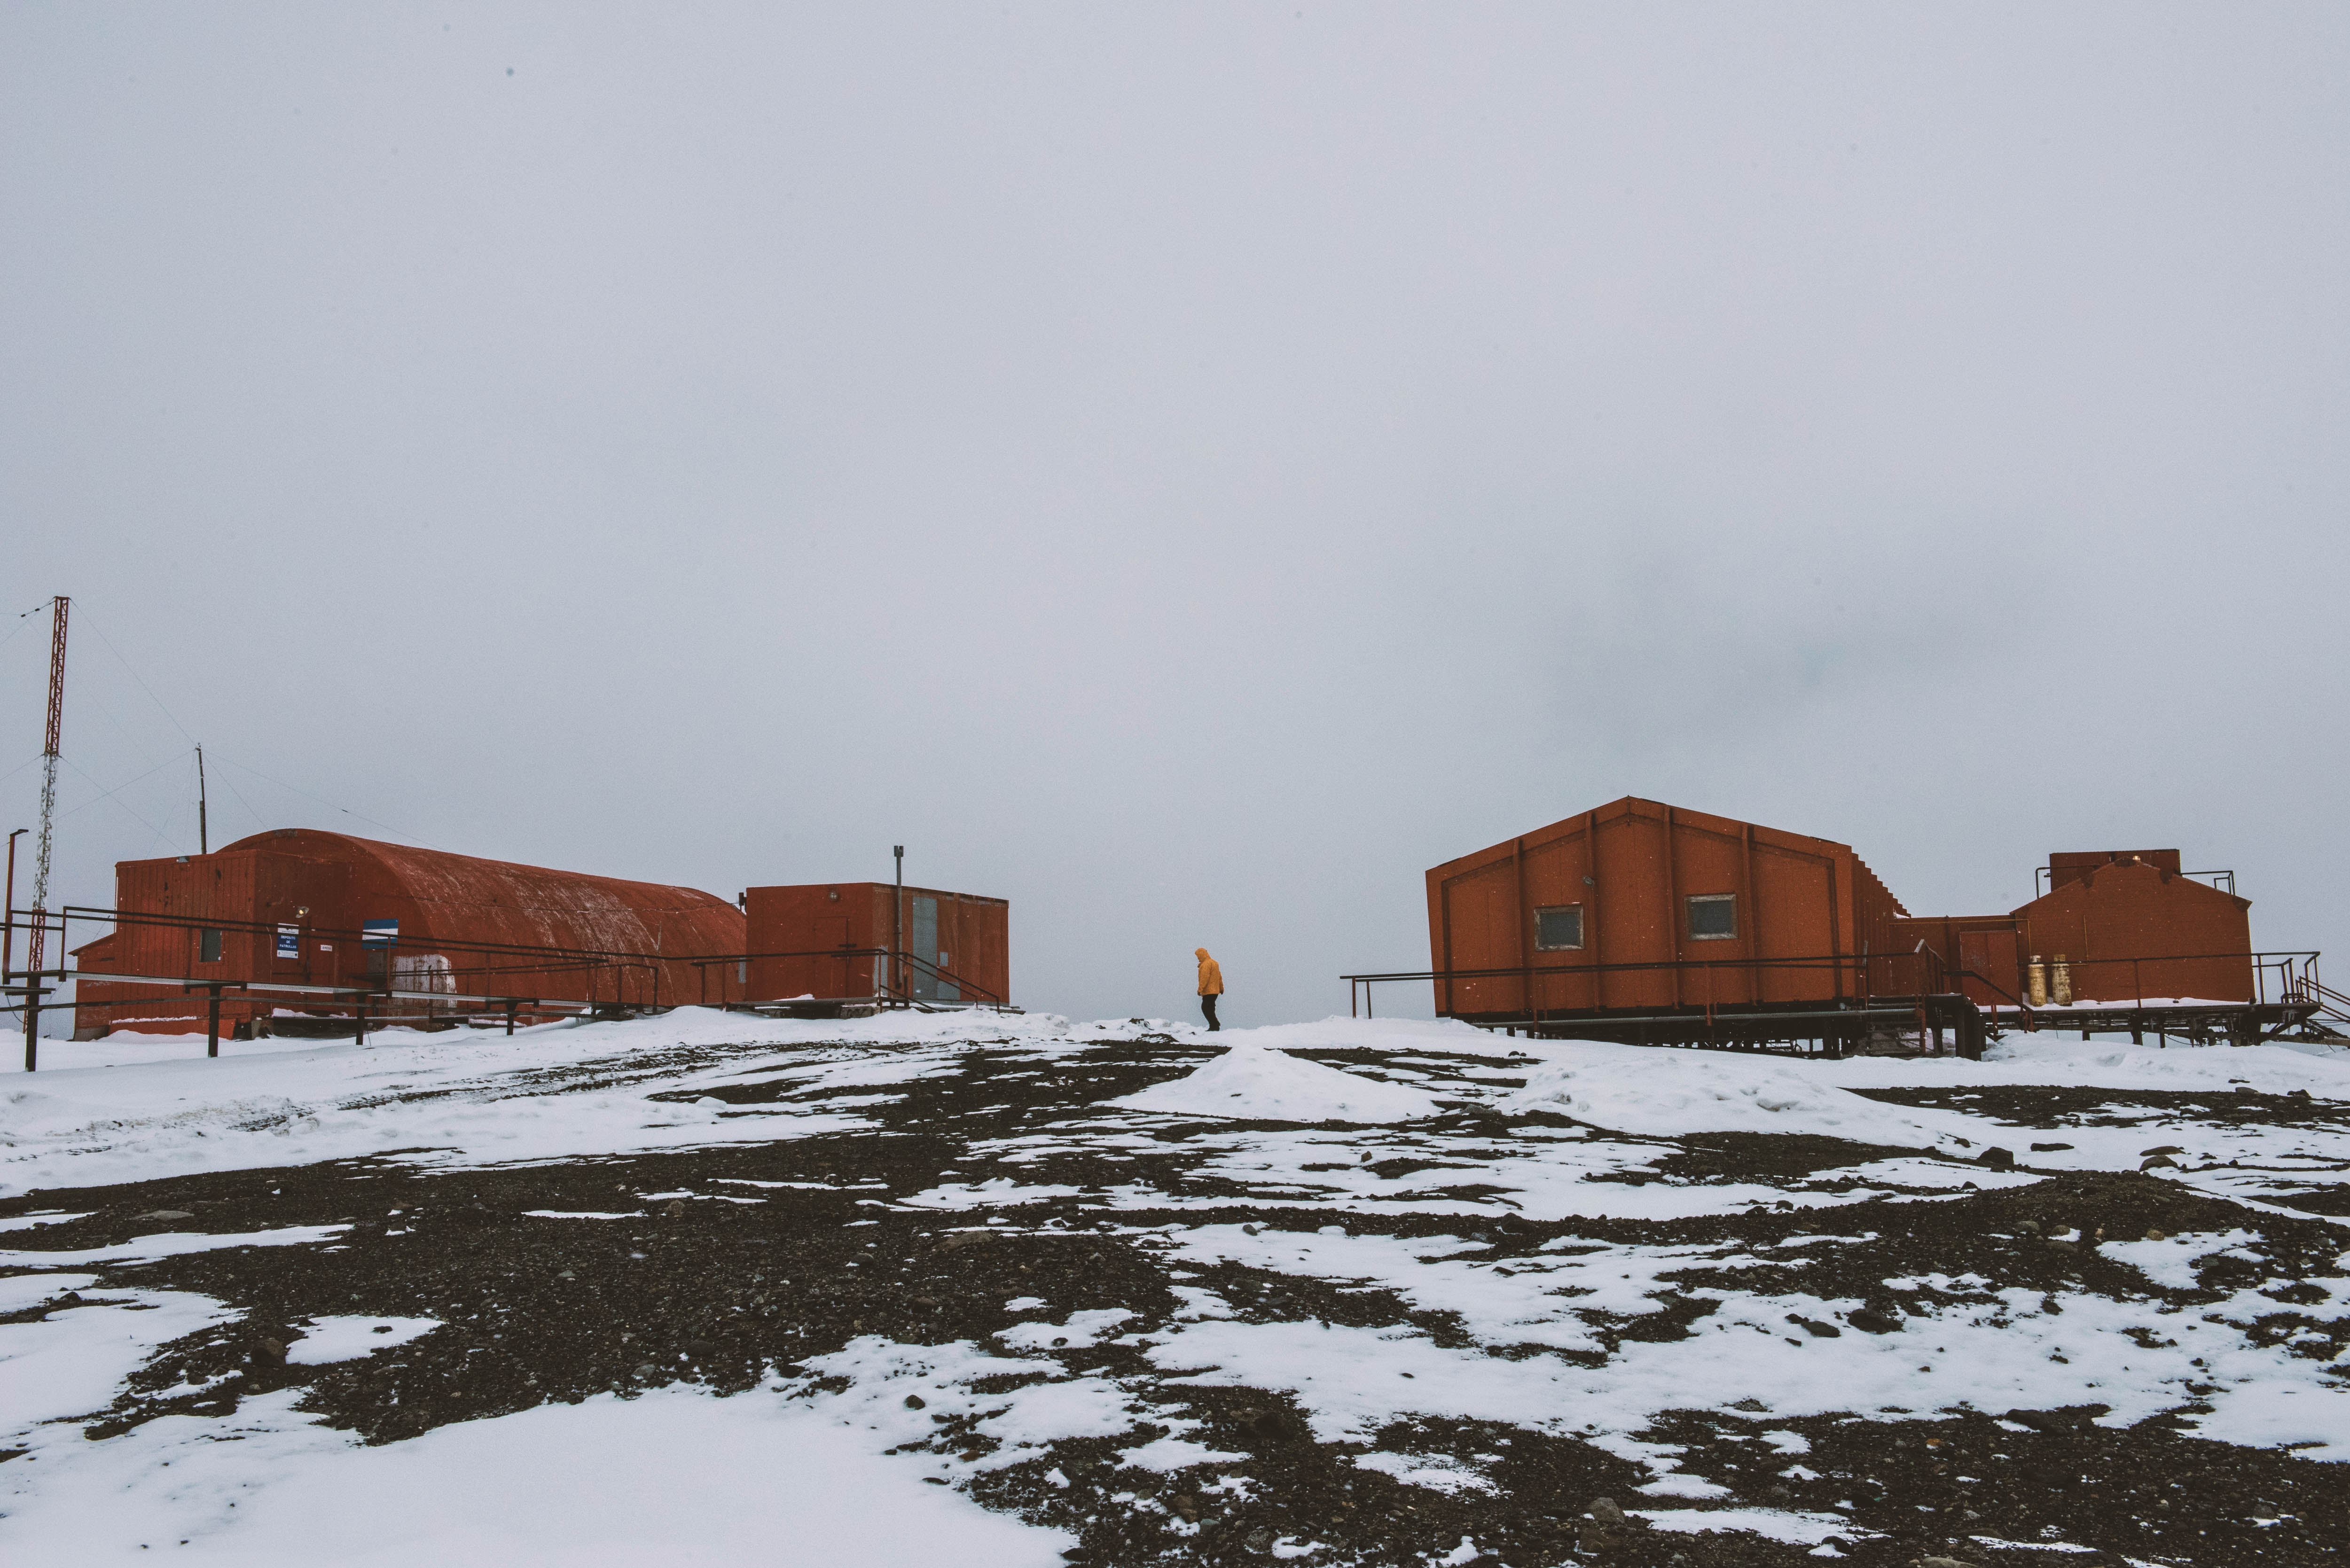 Casa Rosada te invita a conocer la Campaña Antártica por dentro